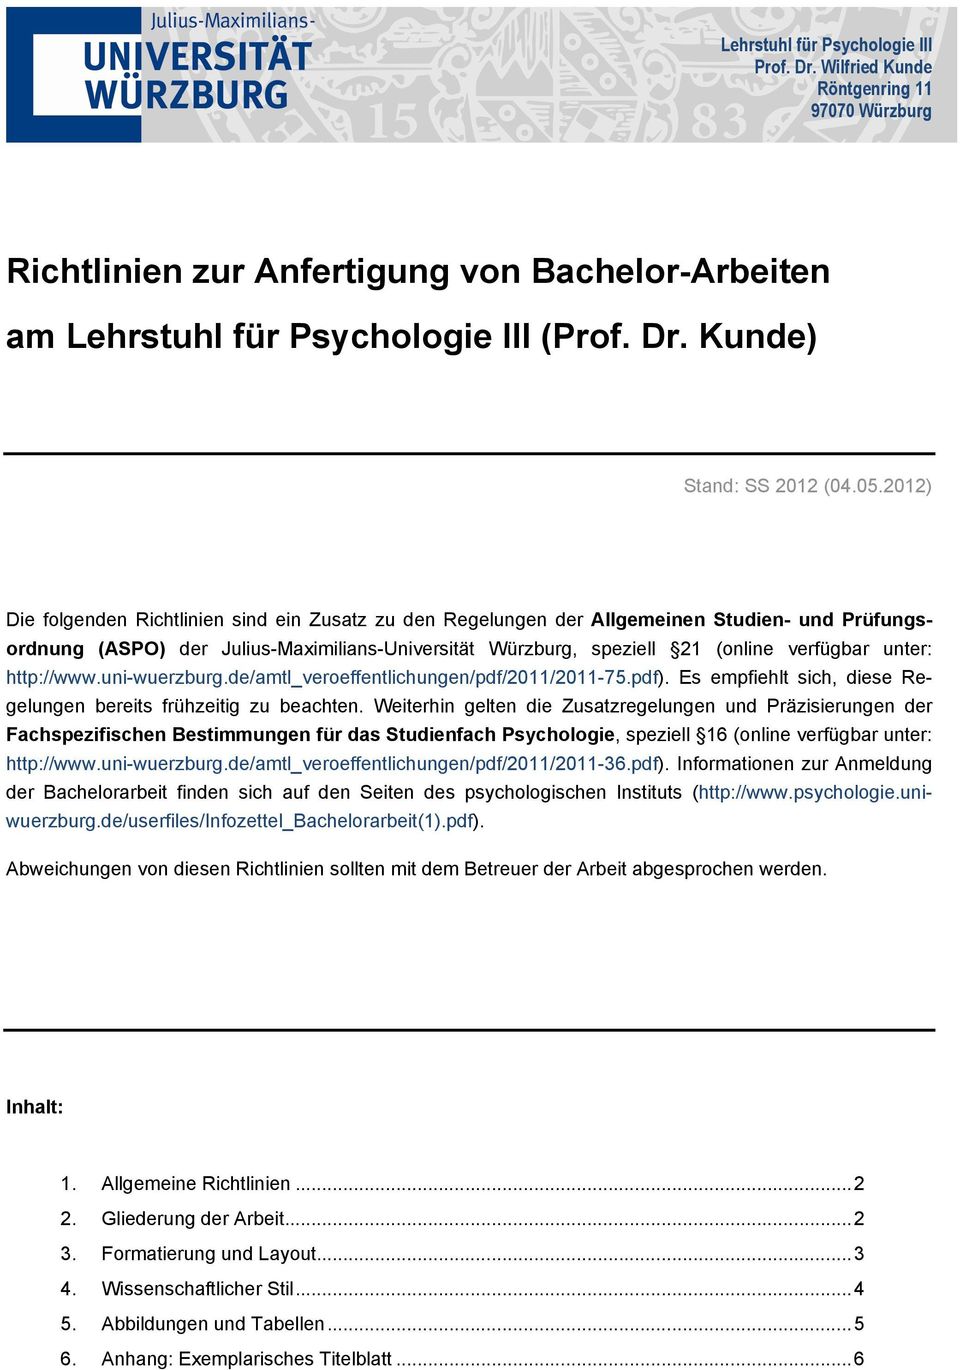 unter: http://www.uni-wuerzburg.de/amtl_veroeffentlichungen/pdf/2011/2011-75.pdf). Es empfiehlt sich, diese Regelungen bereits frühzeitig zu beachten.